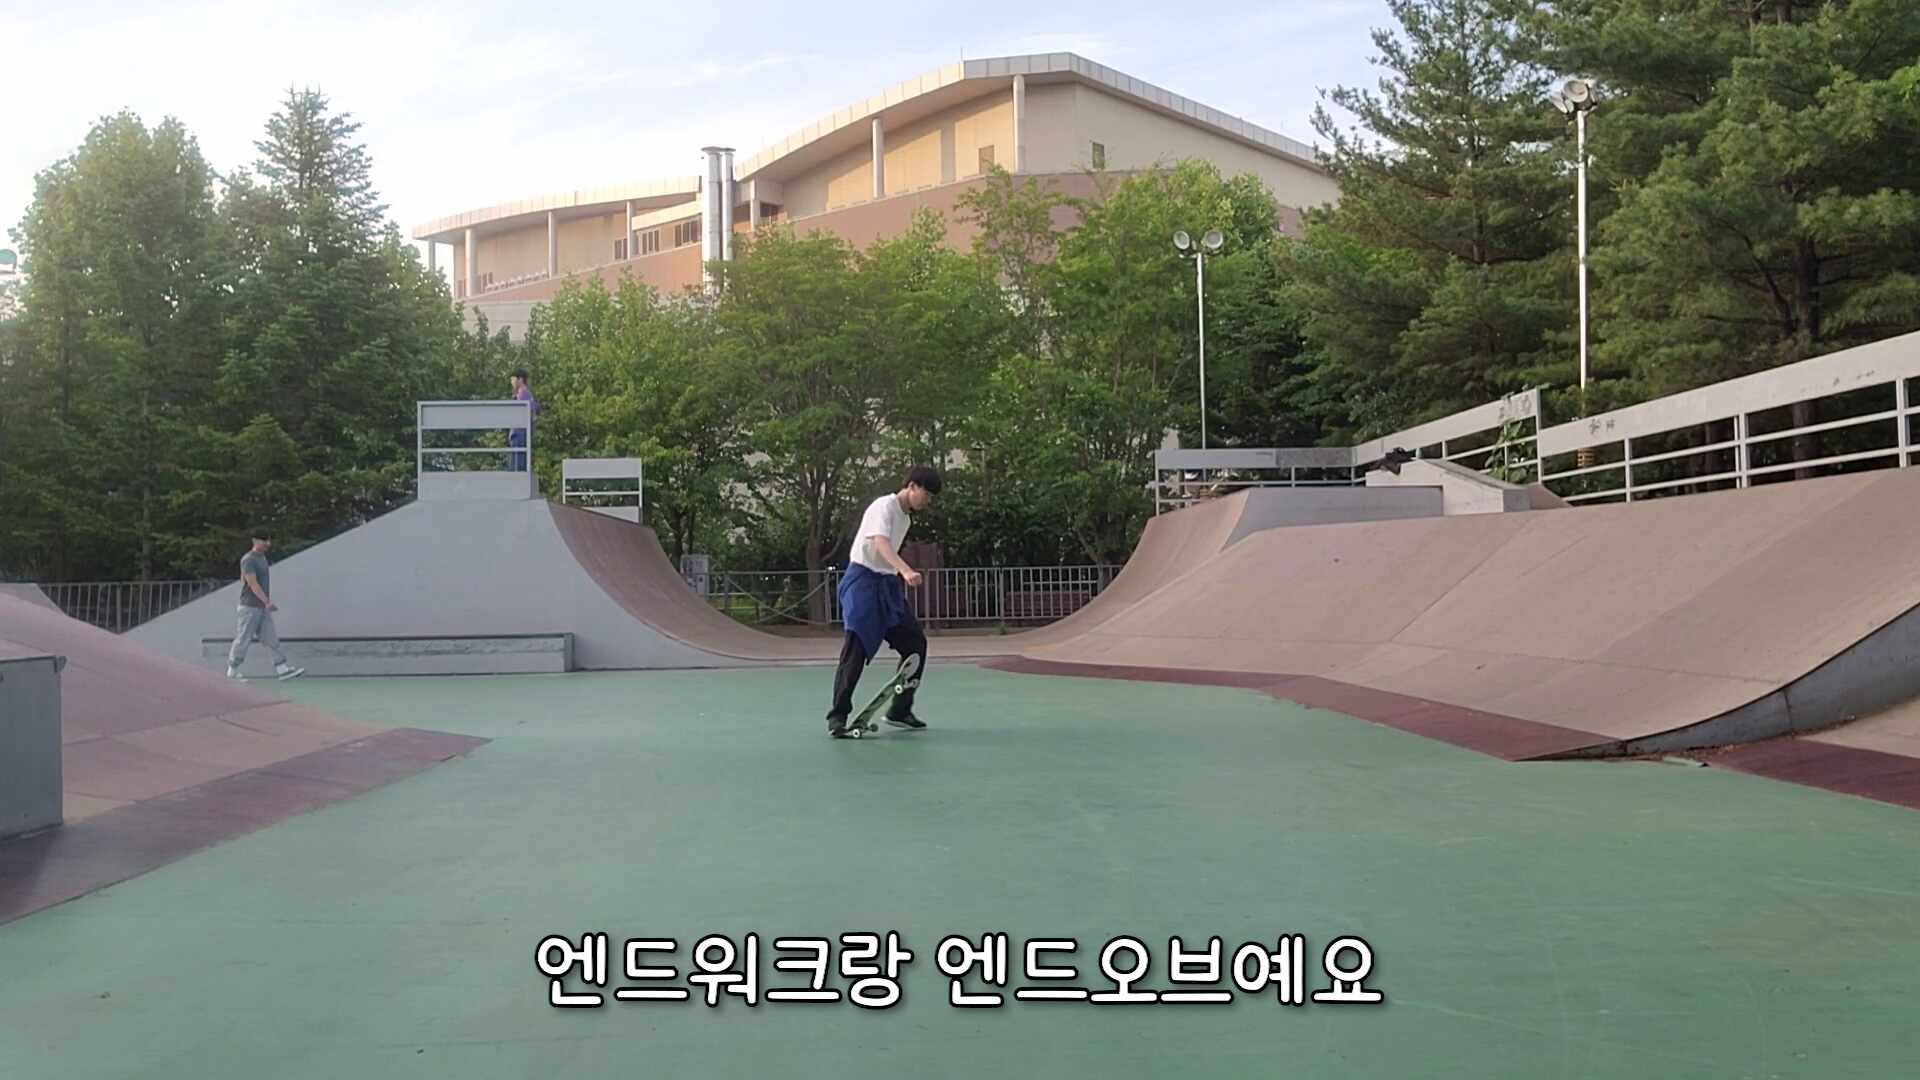 제 10회 영상왕 콘테스트 공모전 - 손지민 - 스케이트보드 브이로그